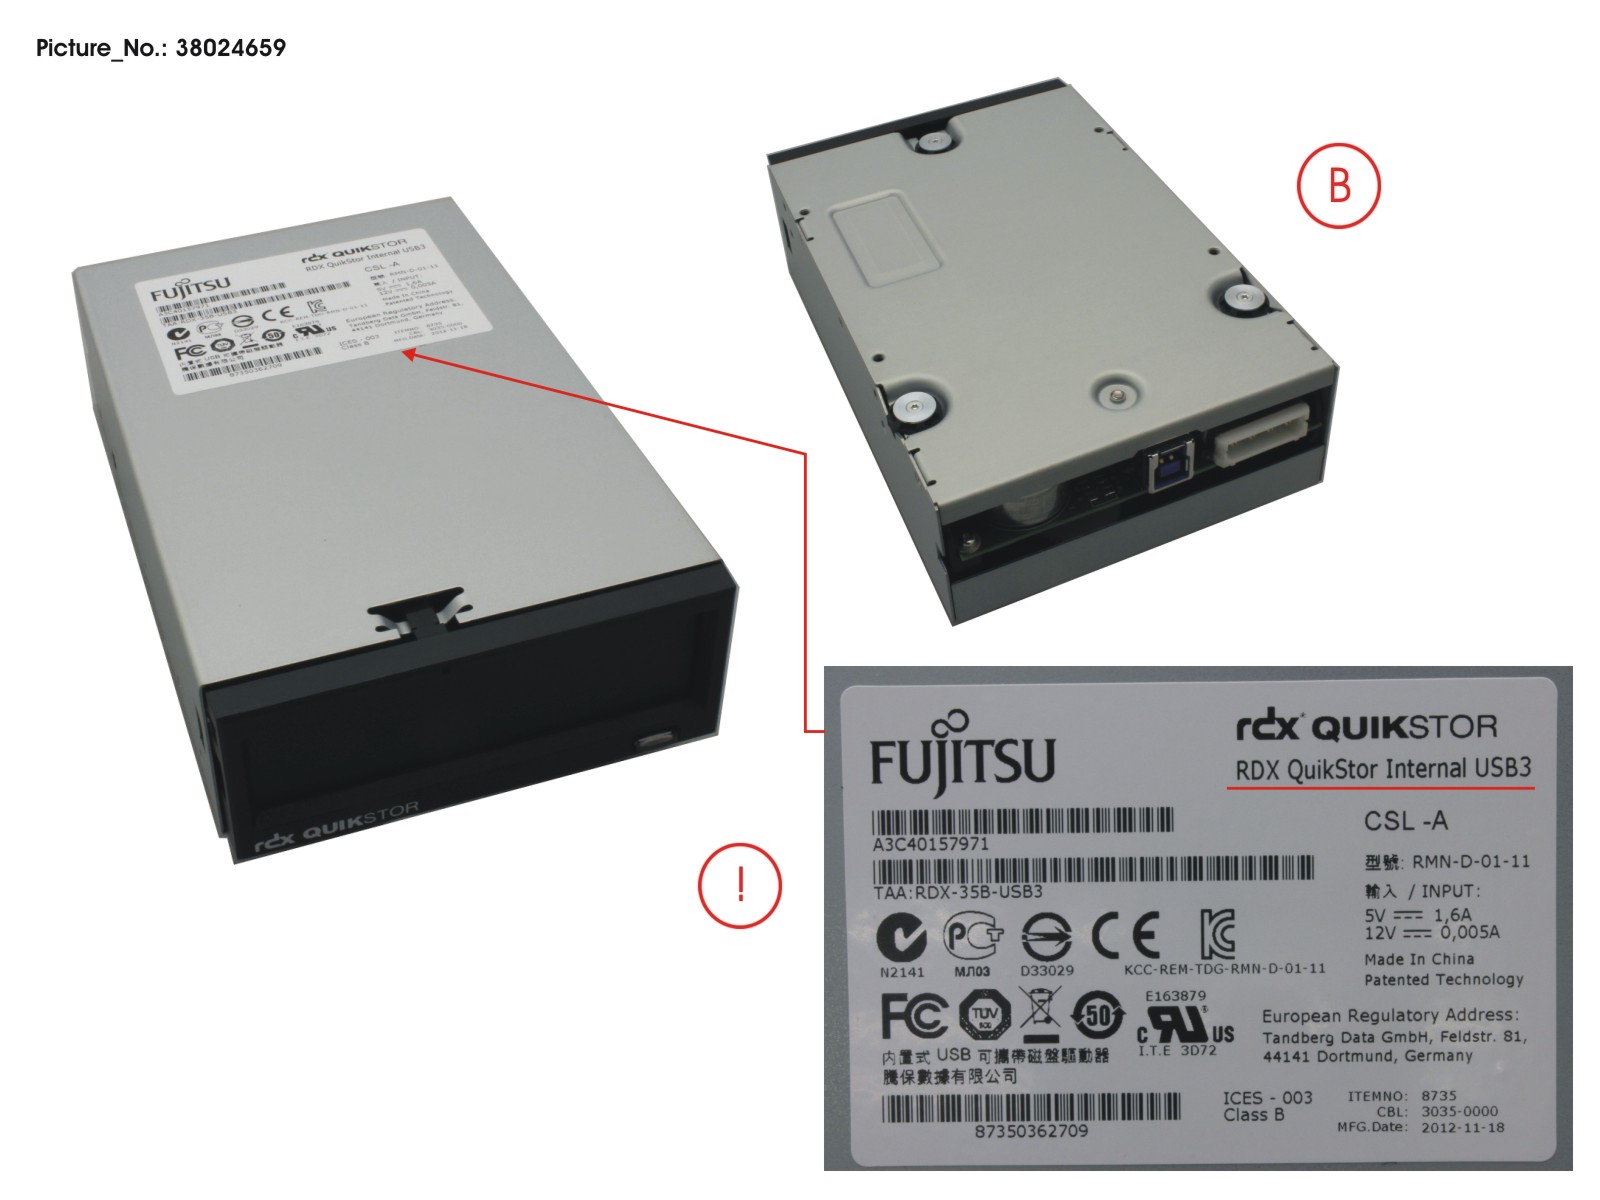 FUJITSU RDX DRIVE USB3.0 3.5 INTERNAL